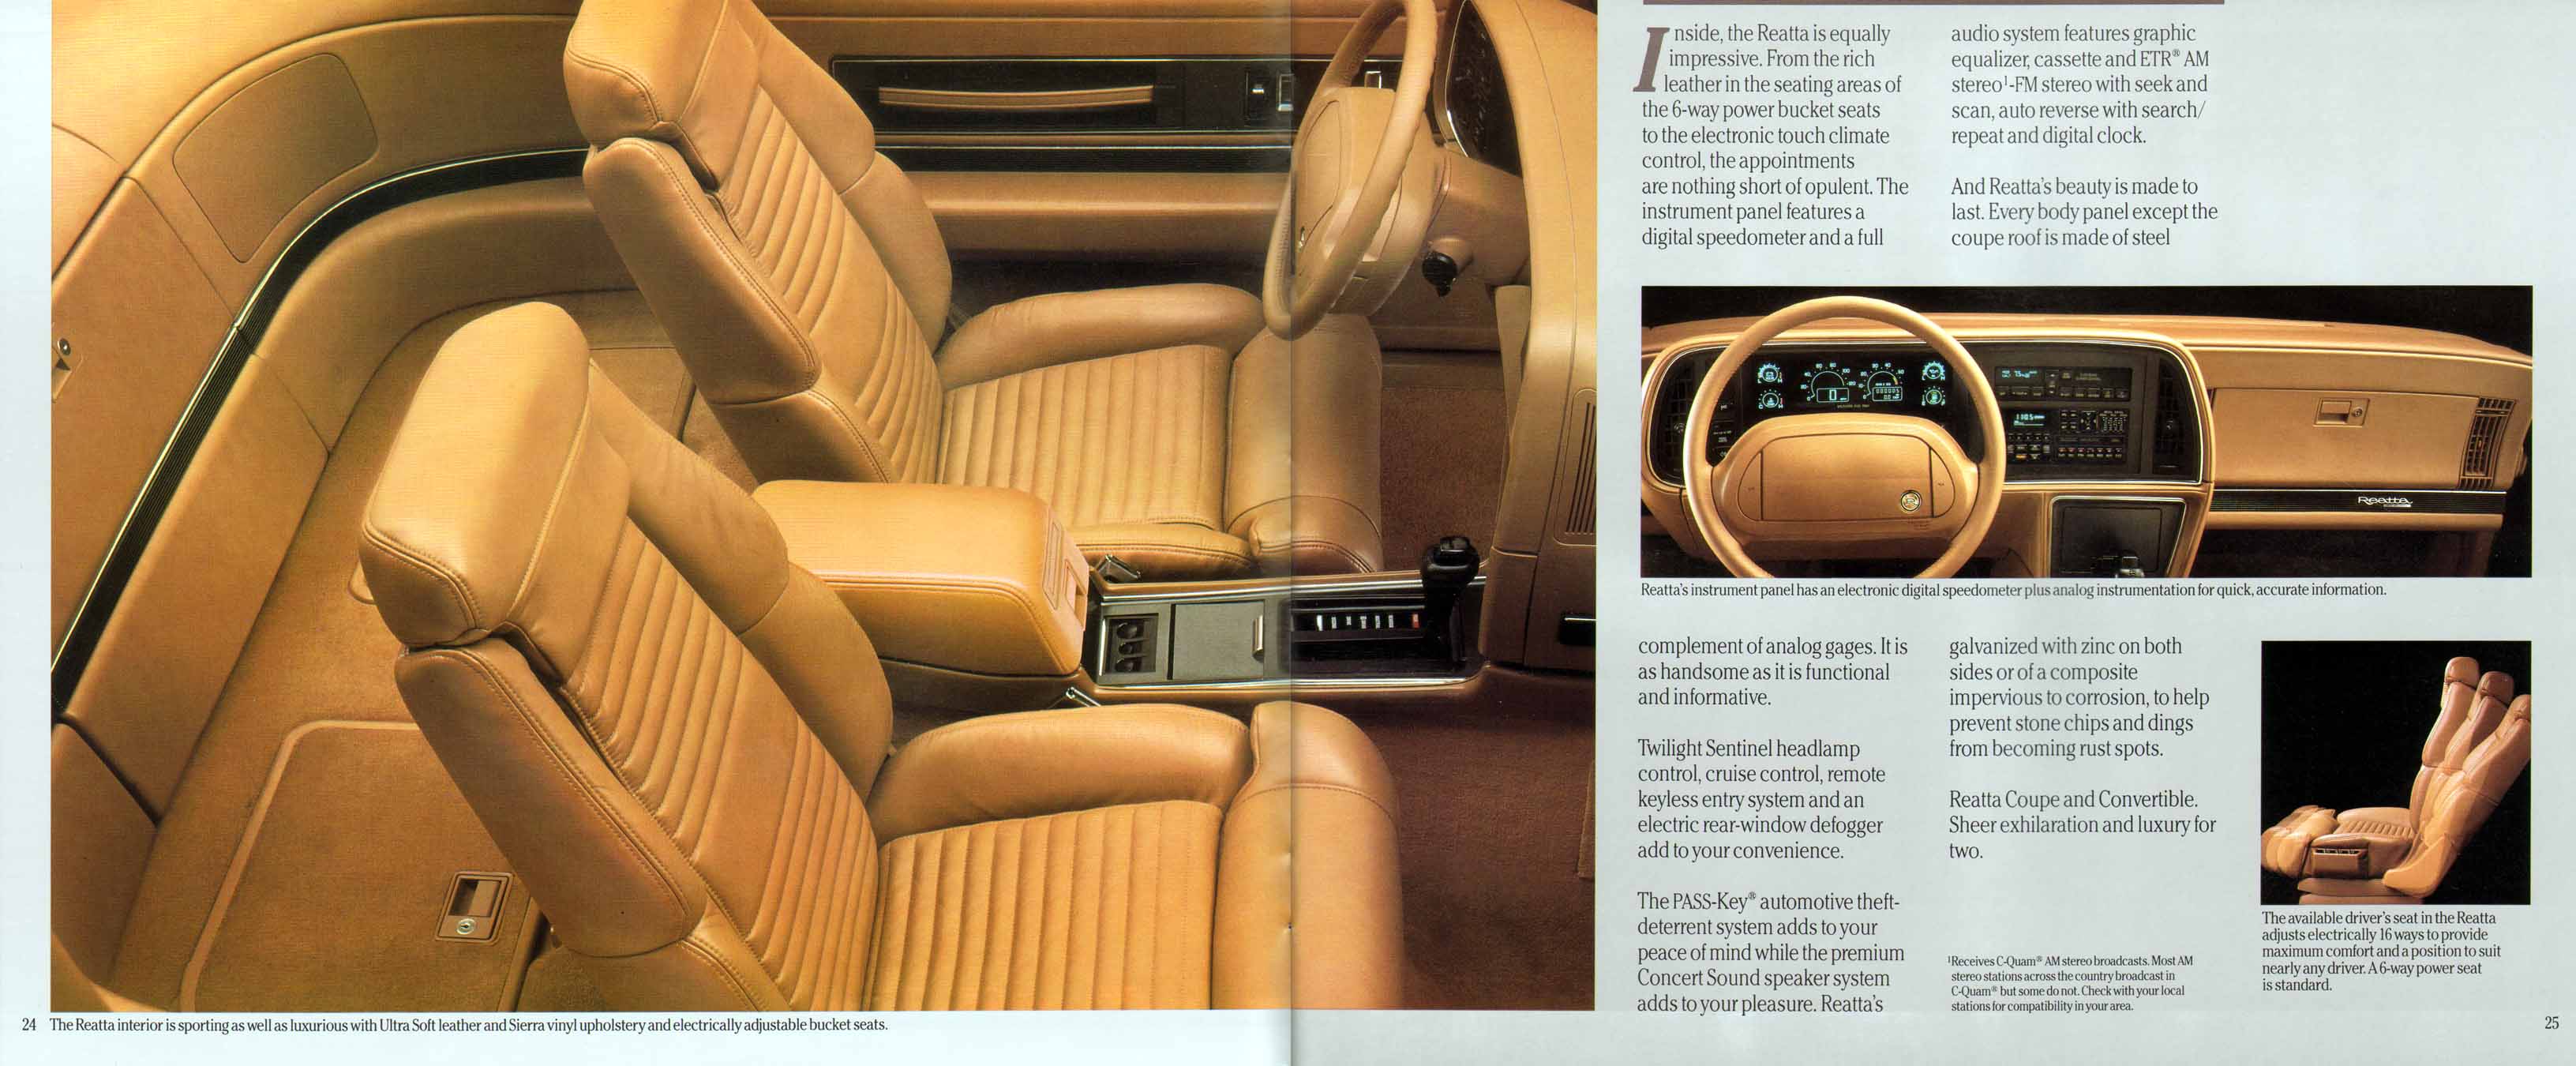 1991 Buick Full Line Prestige-26-27